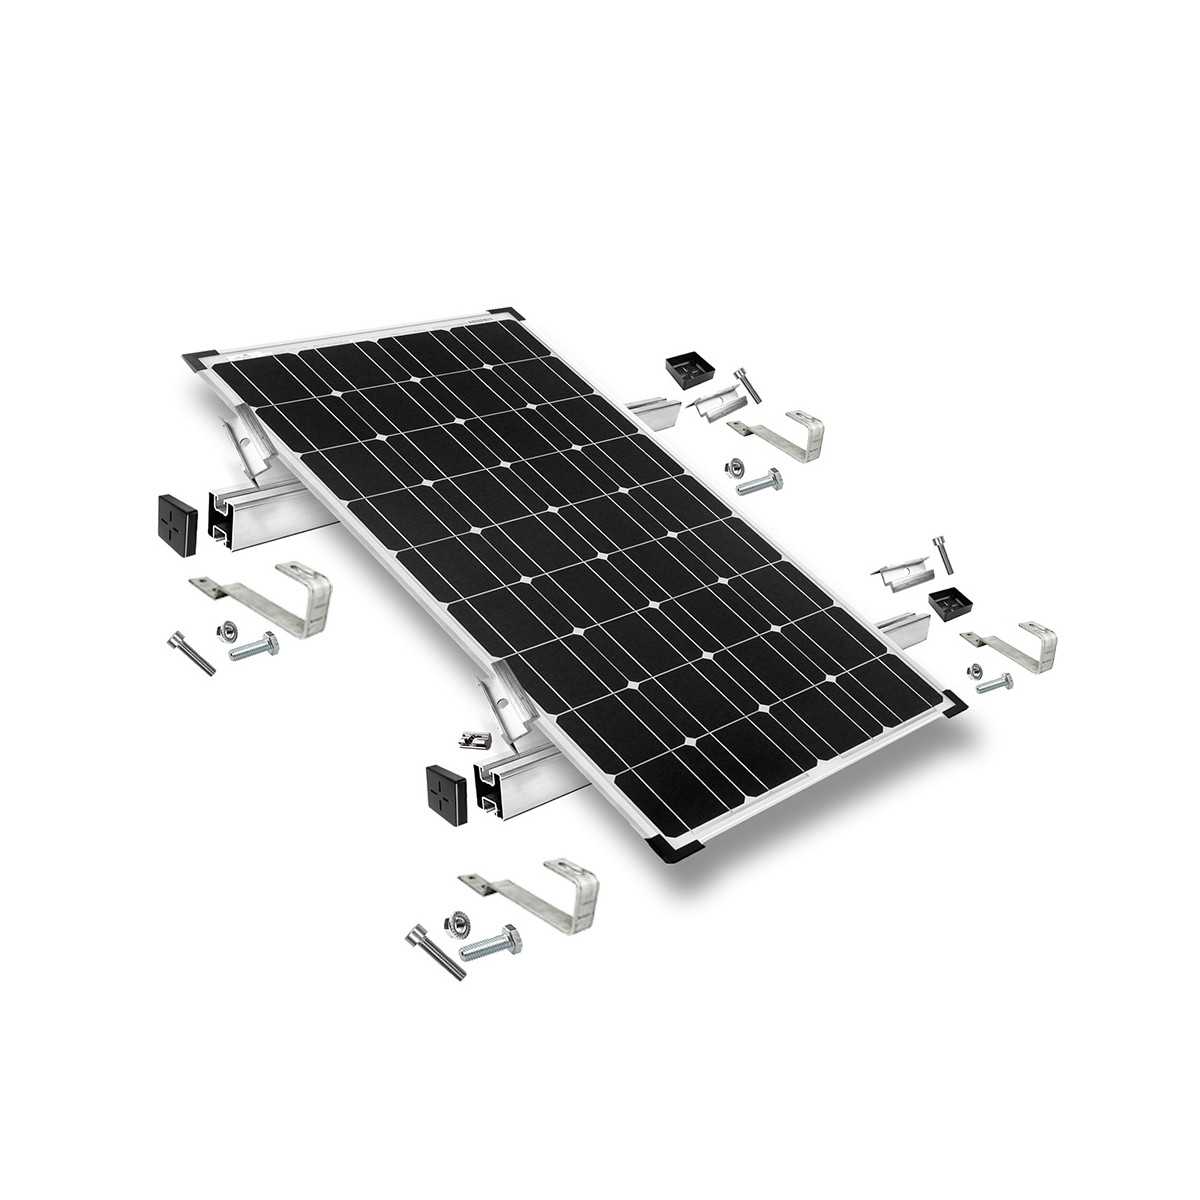 Kit di montaggio h35 con staffe fisse per tetto (per tegole) per tetto inclinato 1 pannello solare frame 35 mm